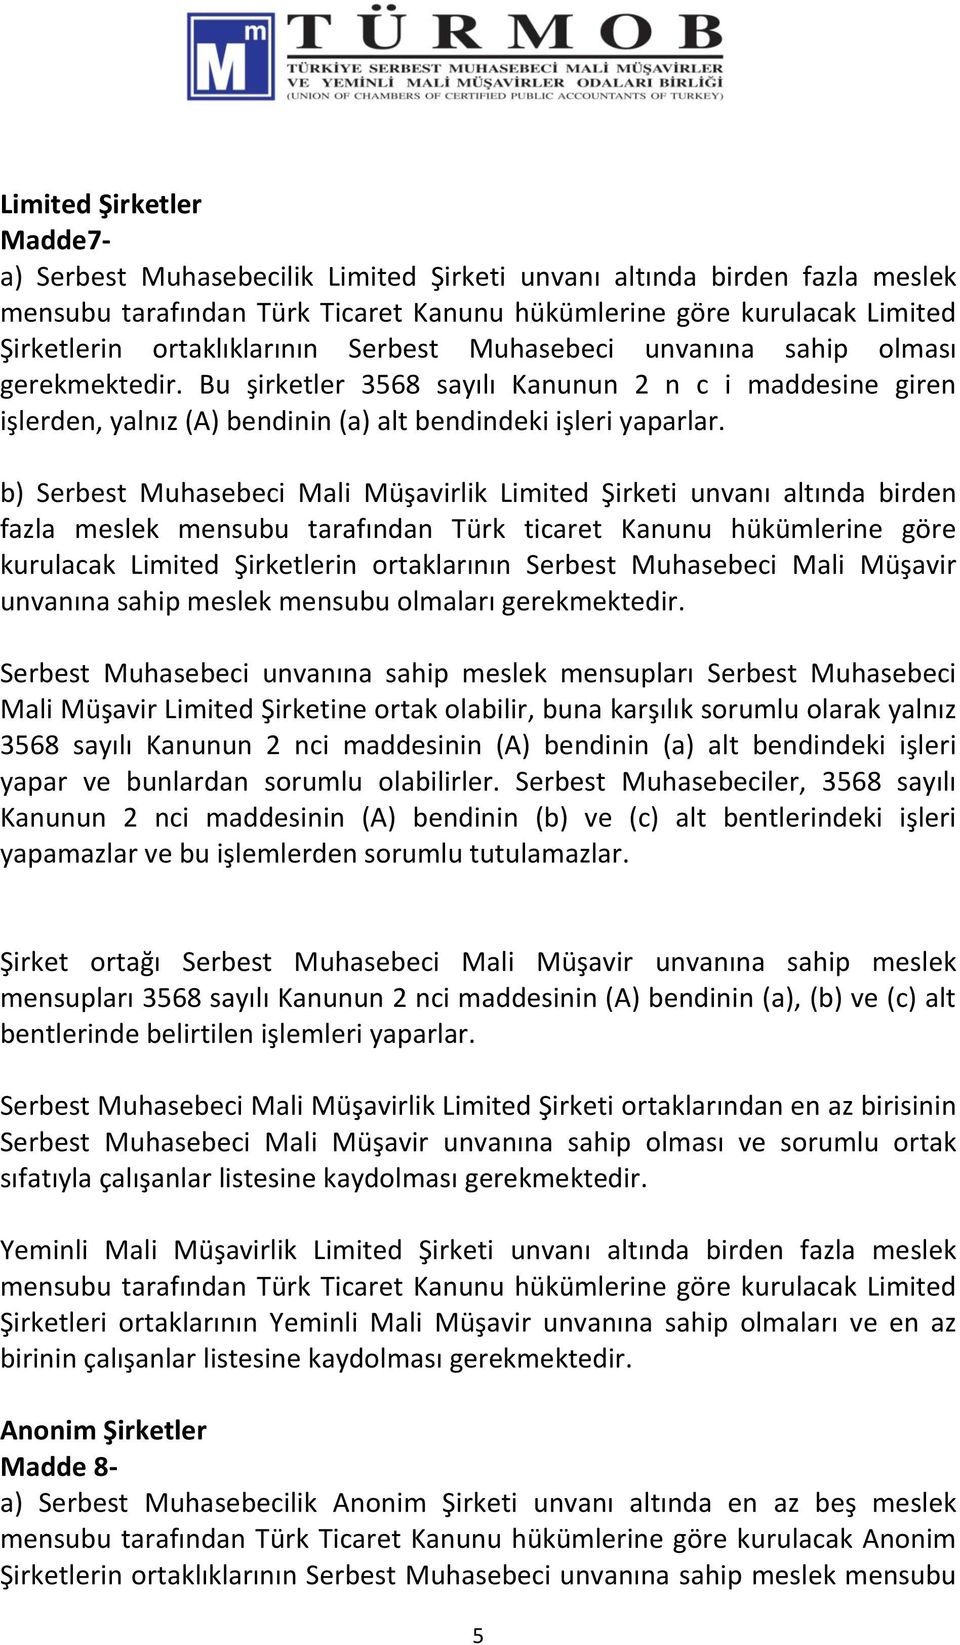 b) Serbest Muhasebeci Mali Müşavirlik Limited Şirketi unvanı altında birden fazla meslek mensubu tarafından Türk ticaret Kanunu hükümlerine göre kurulacak Limited Şirketlerin ortaklarının Serbest